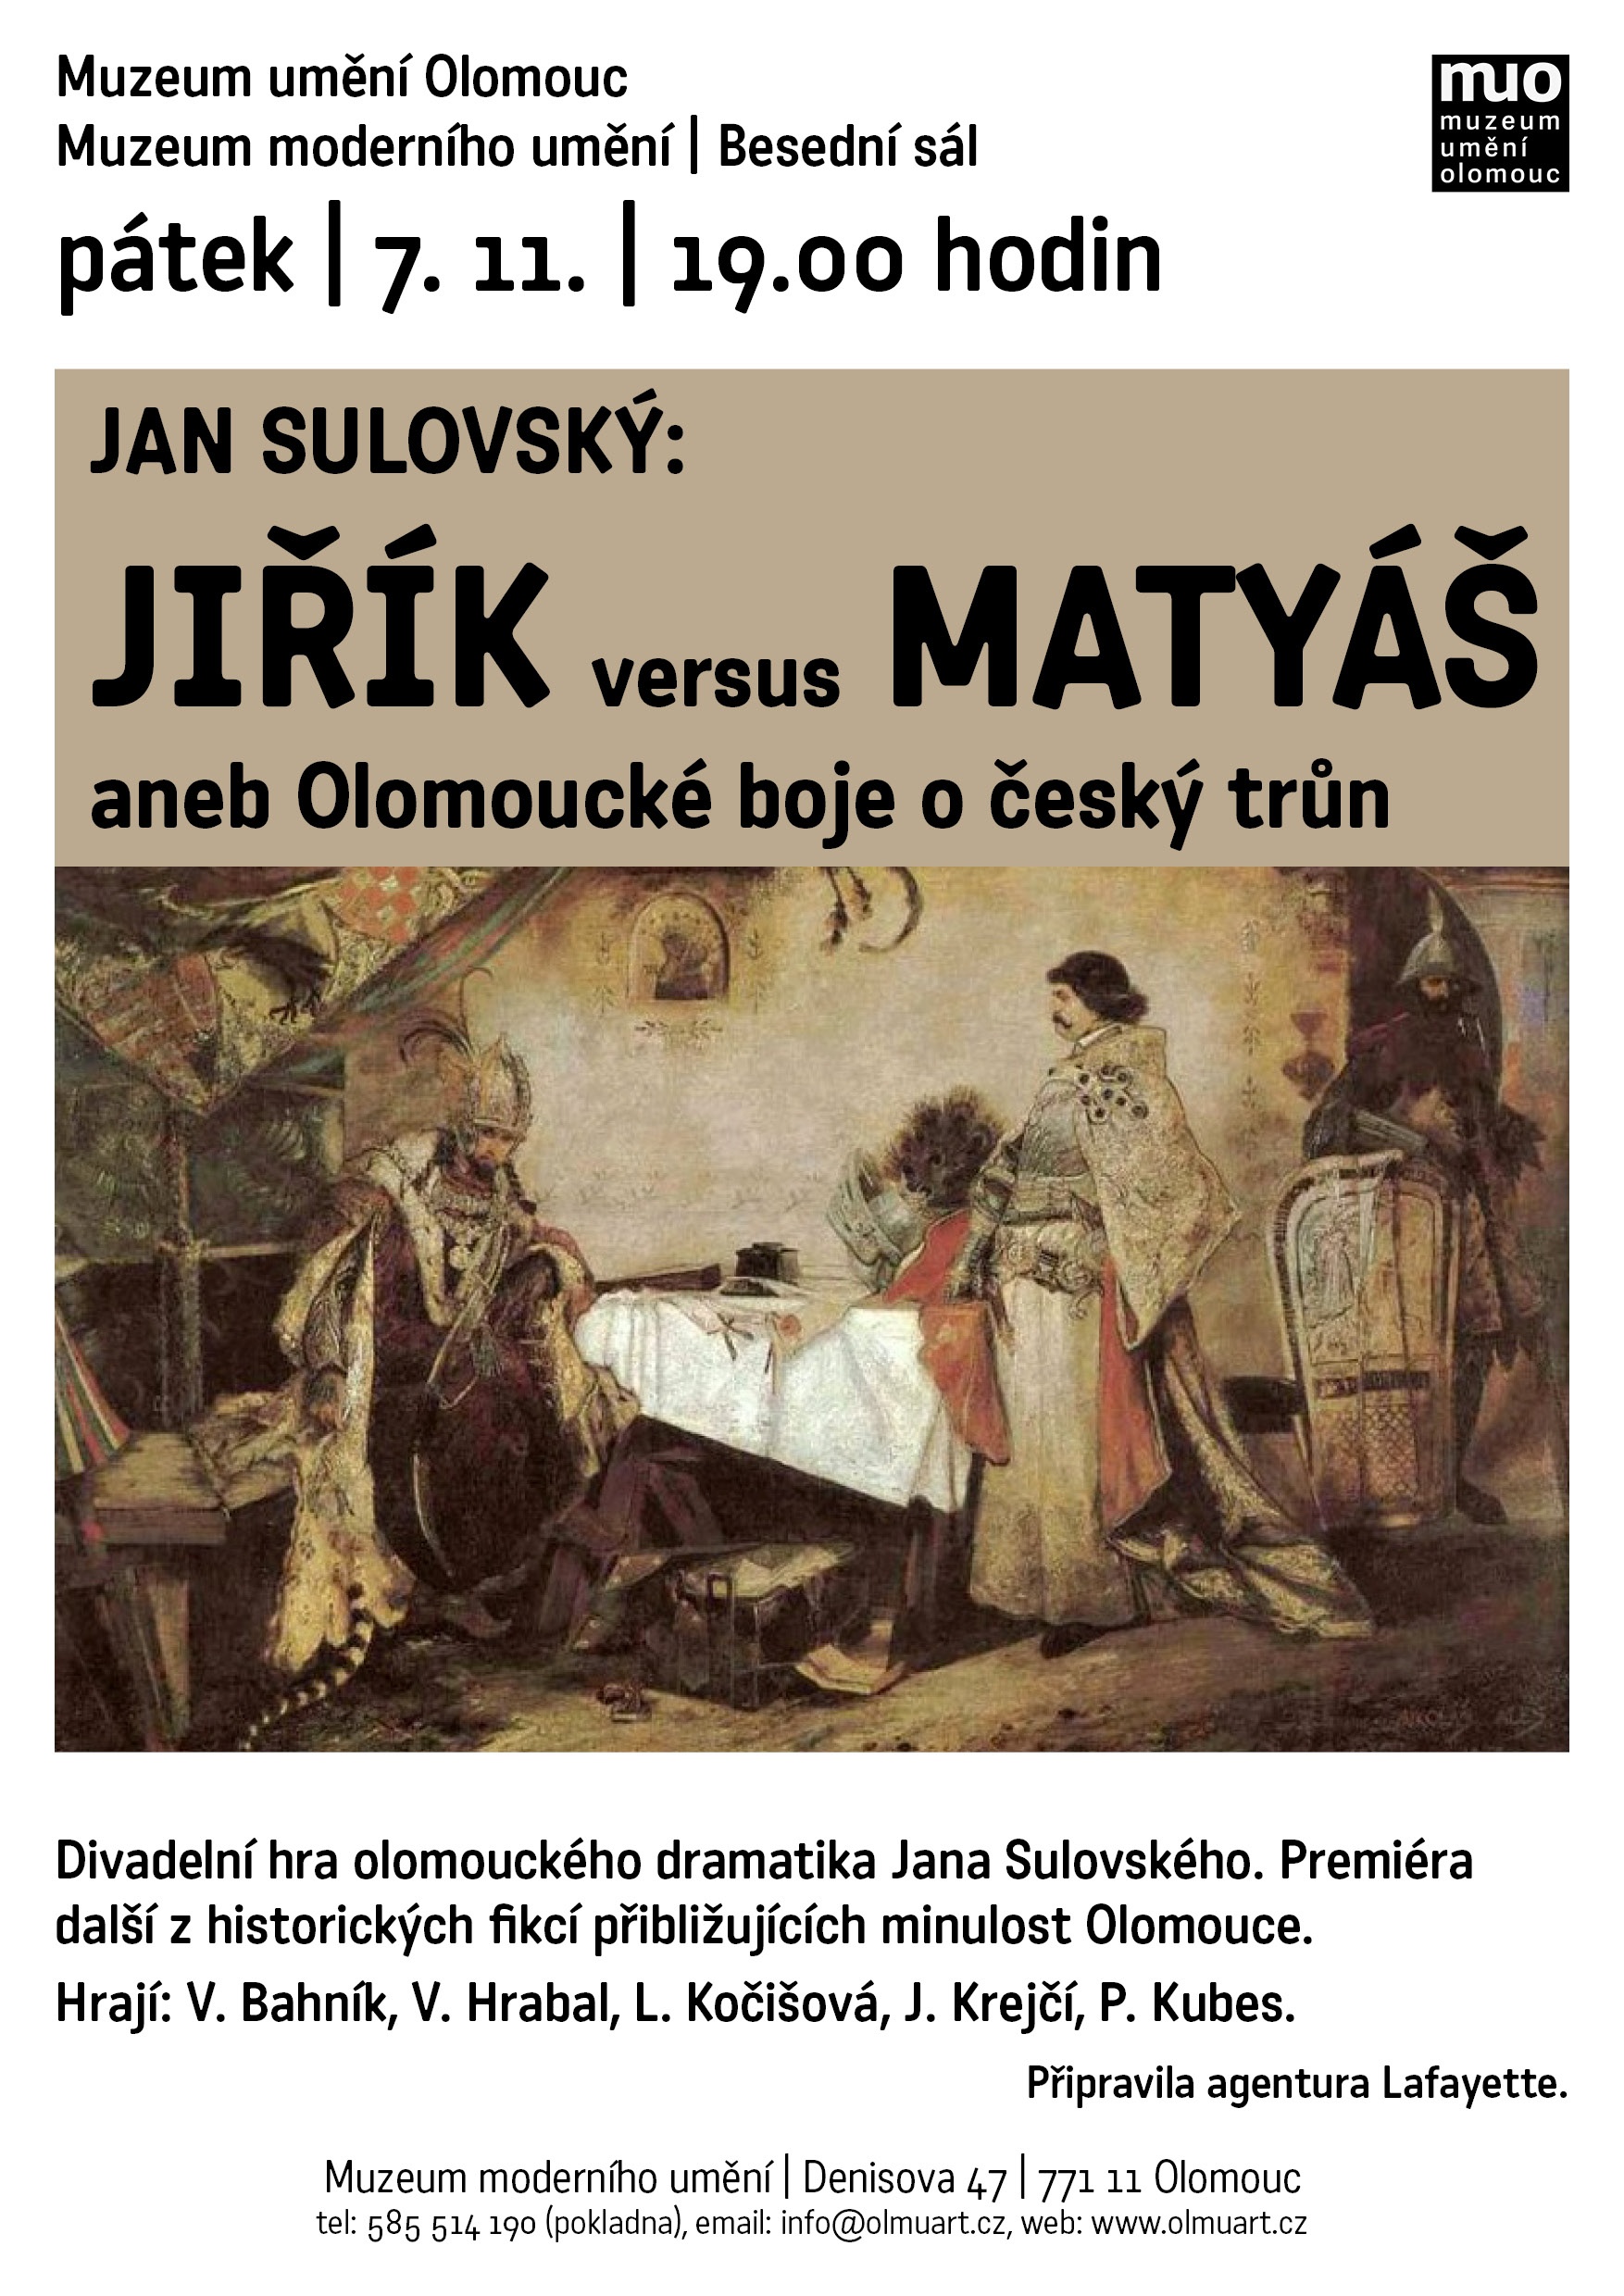 Jiřík versus Matyáš